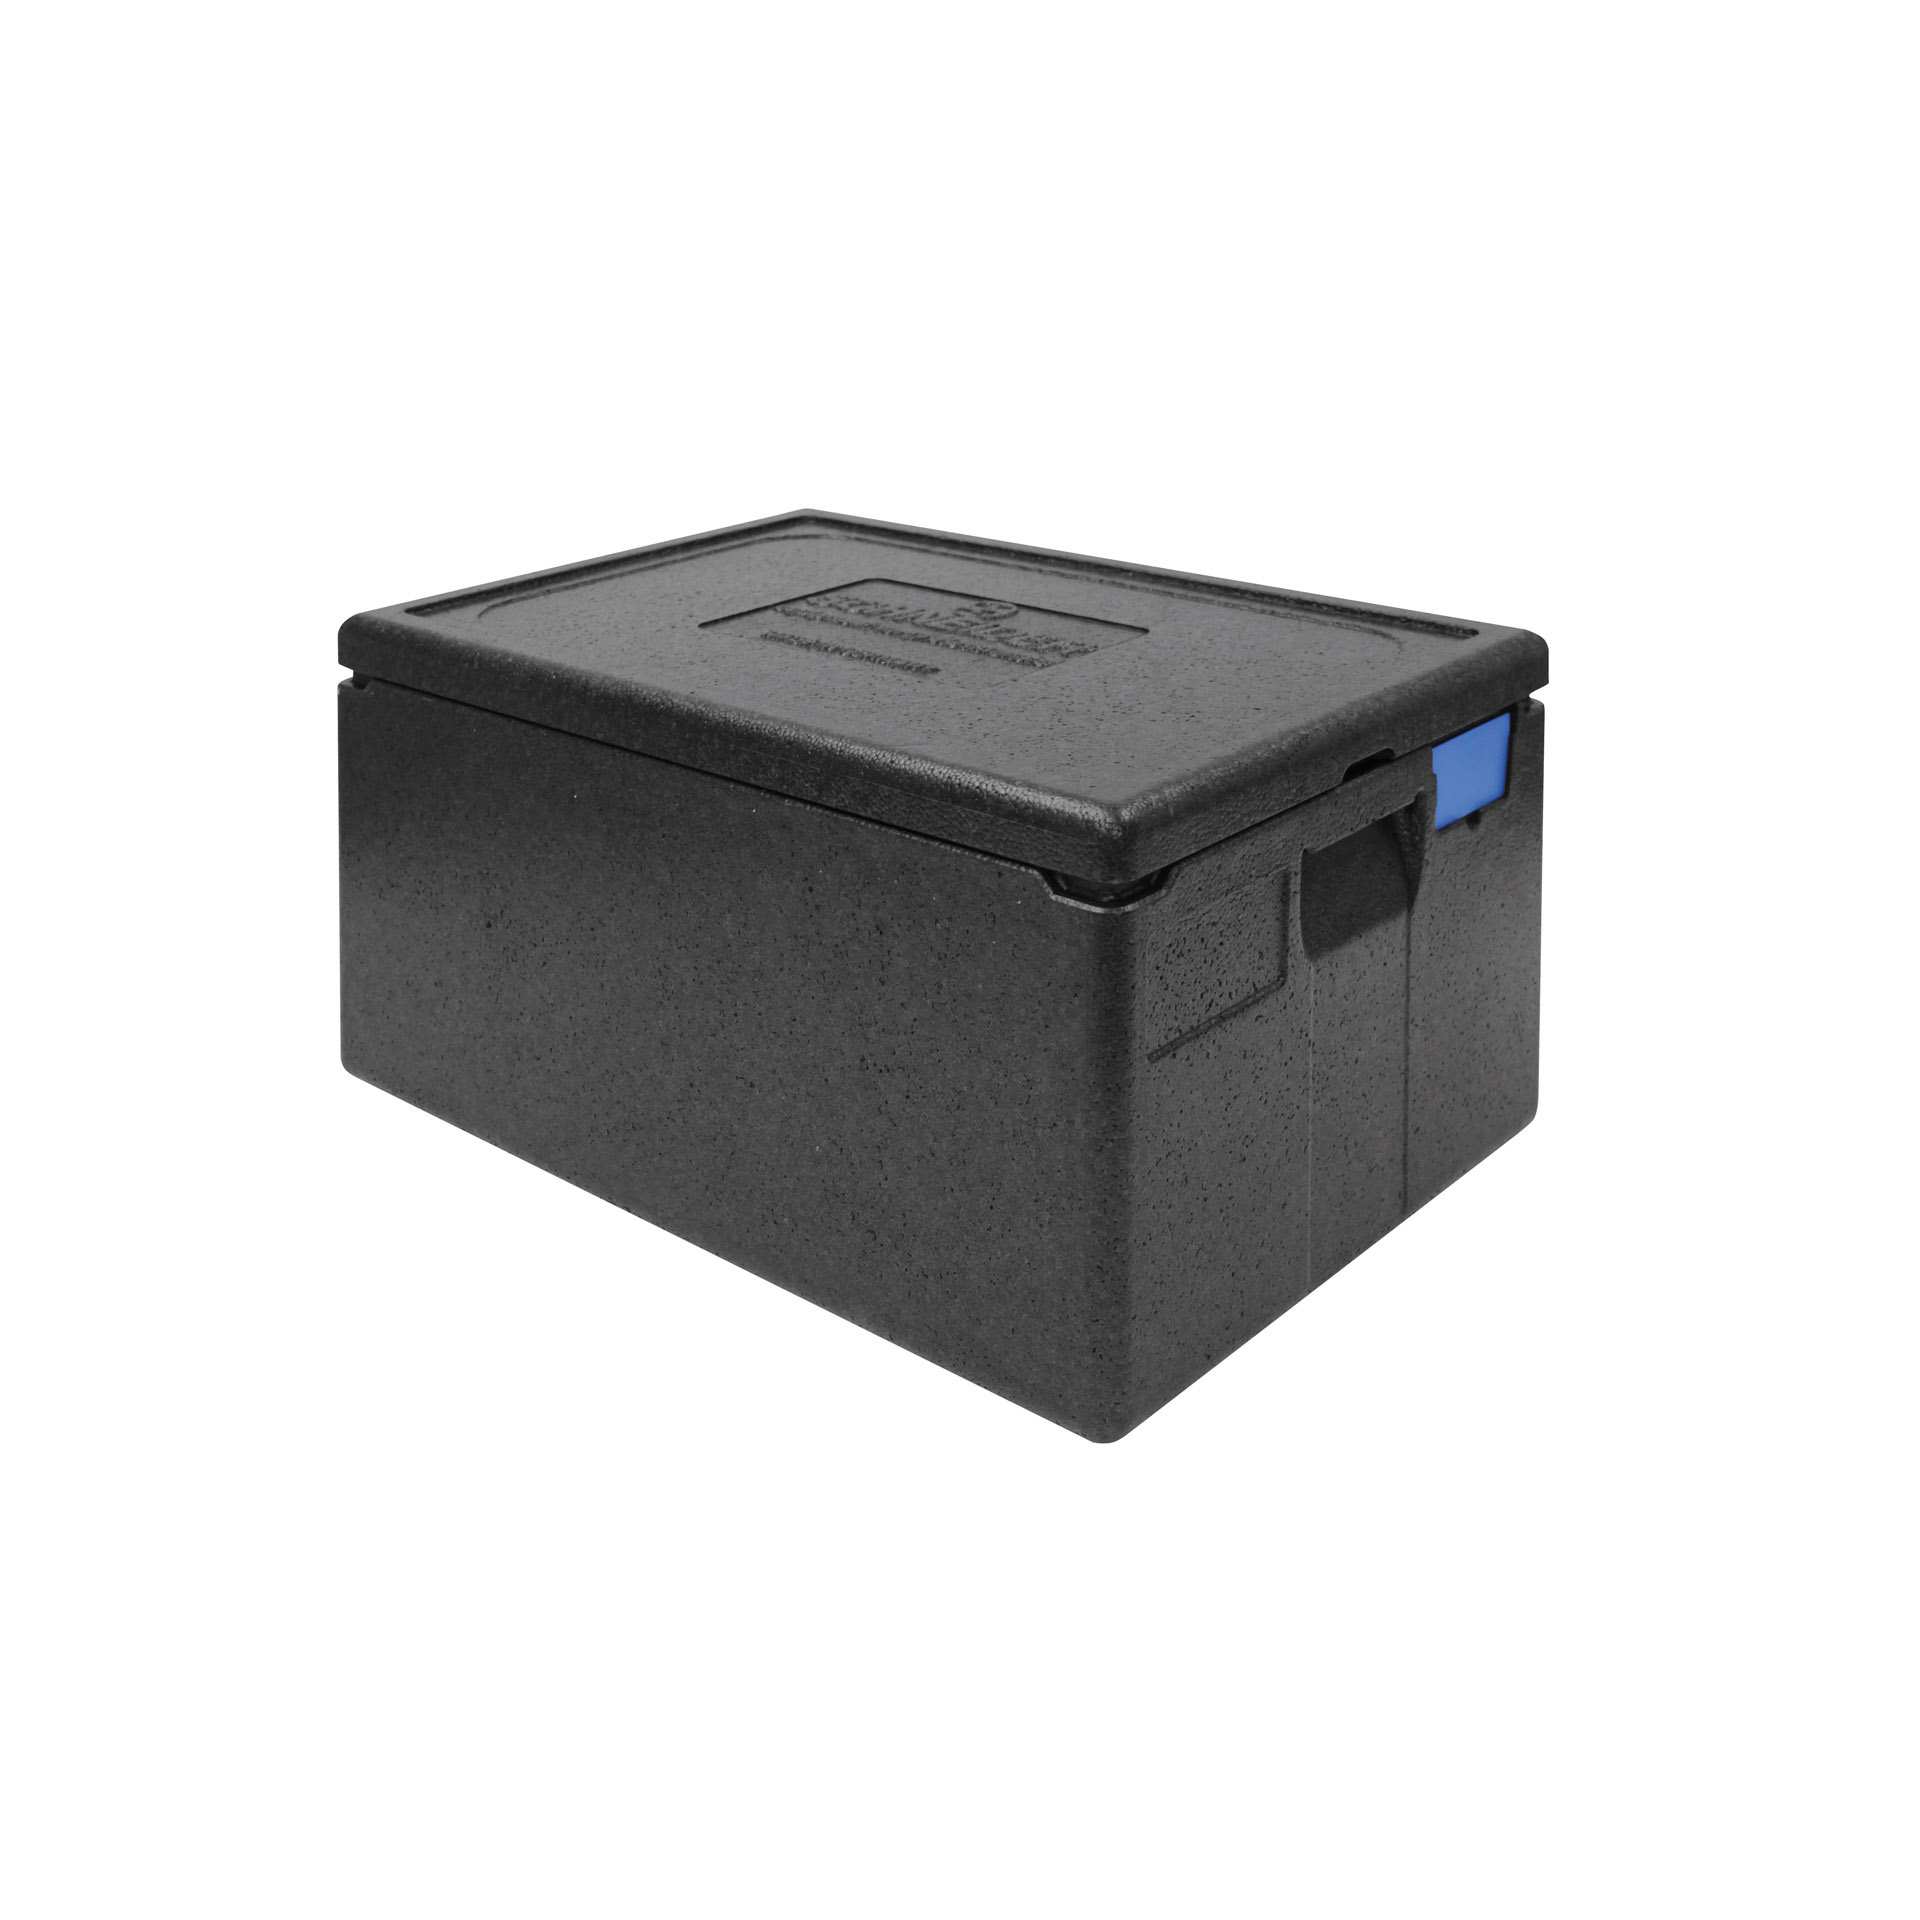 TOP-BOX - mit Deckel - Abm. 60,0 x 40,0 x 32,0 cm - Inhalt 46 l - GN 1/1 (530 x 325 mm) - EPP - 620320-C